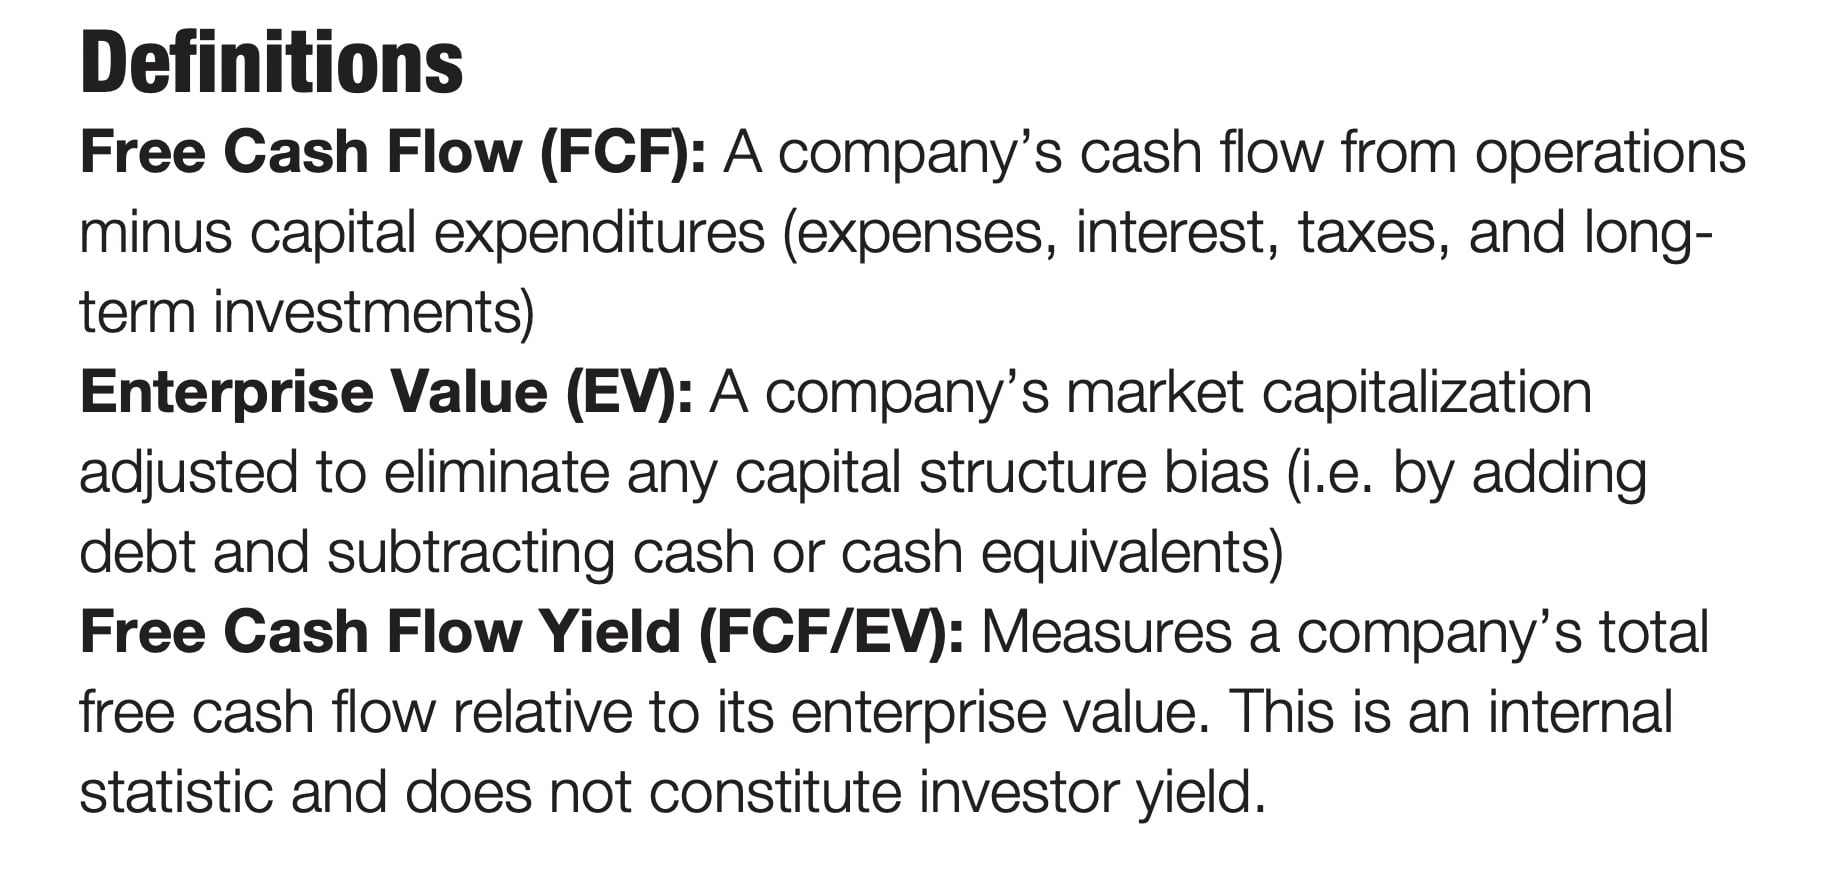 Pacer US Cash Cows 100 ETF COWZ Definitions of Free Cash Flow (FCF) Enterprise Value (EV) and Free Cash Flow Yield (FCF/EV)